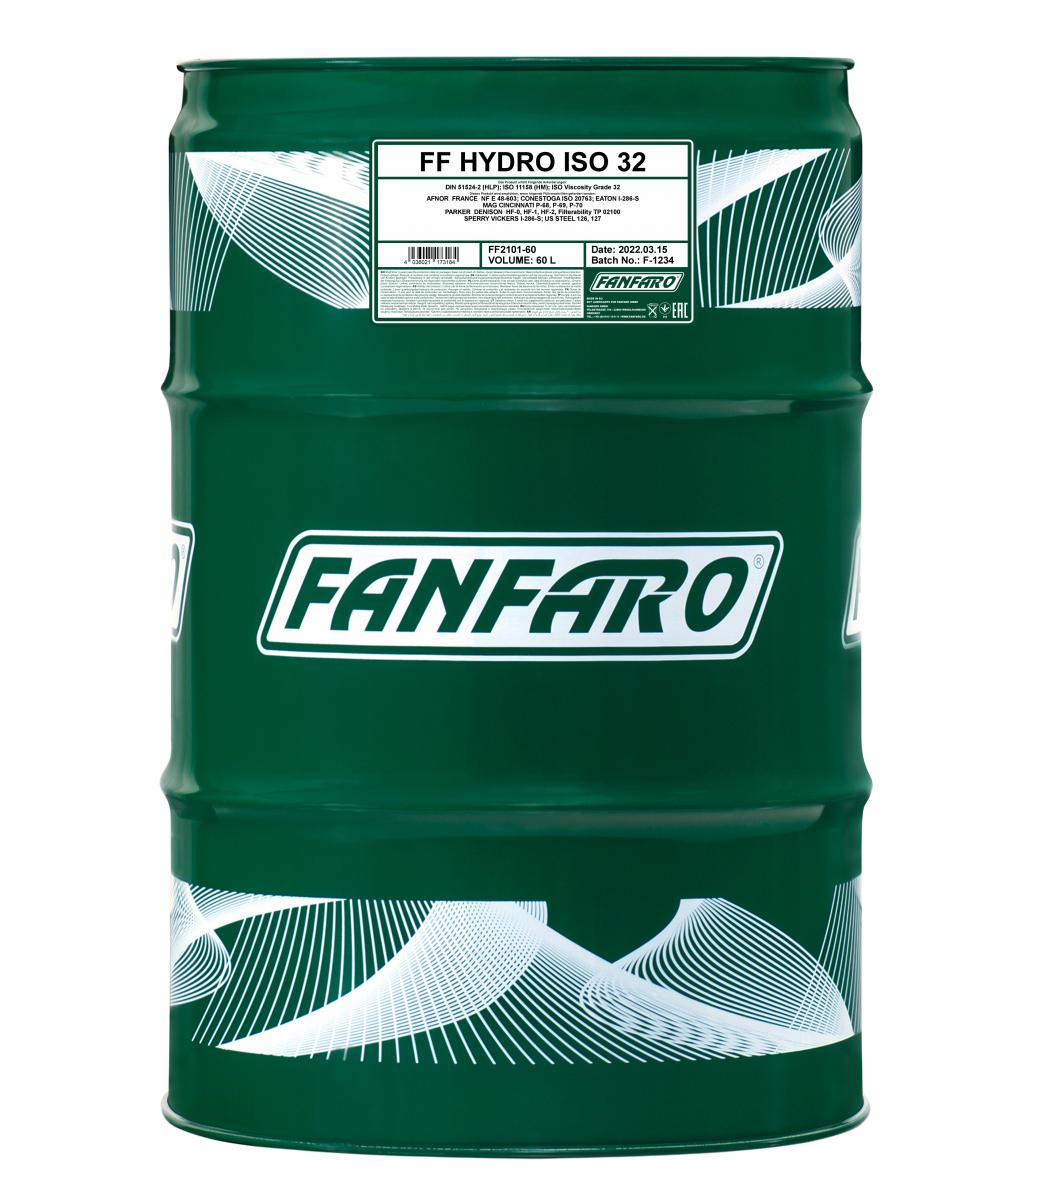 FANFARO HYDRO ISO 32